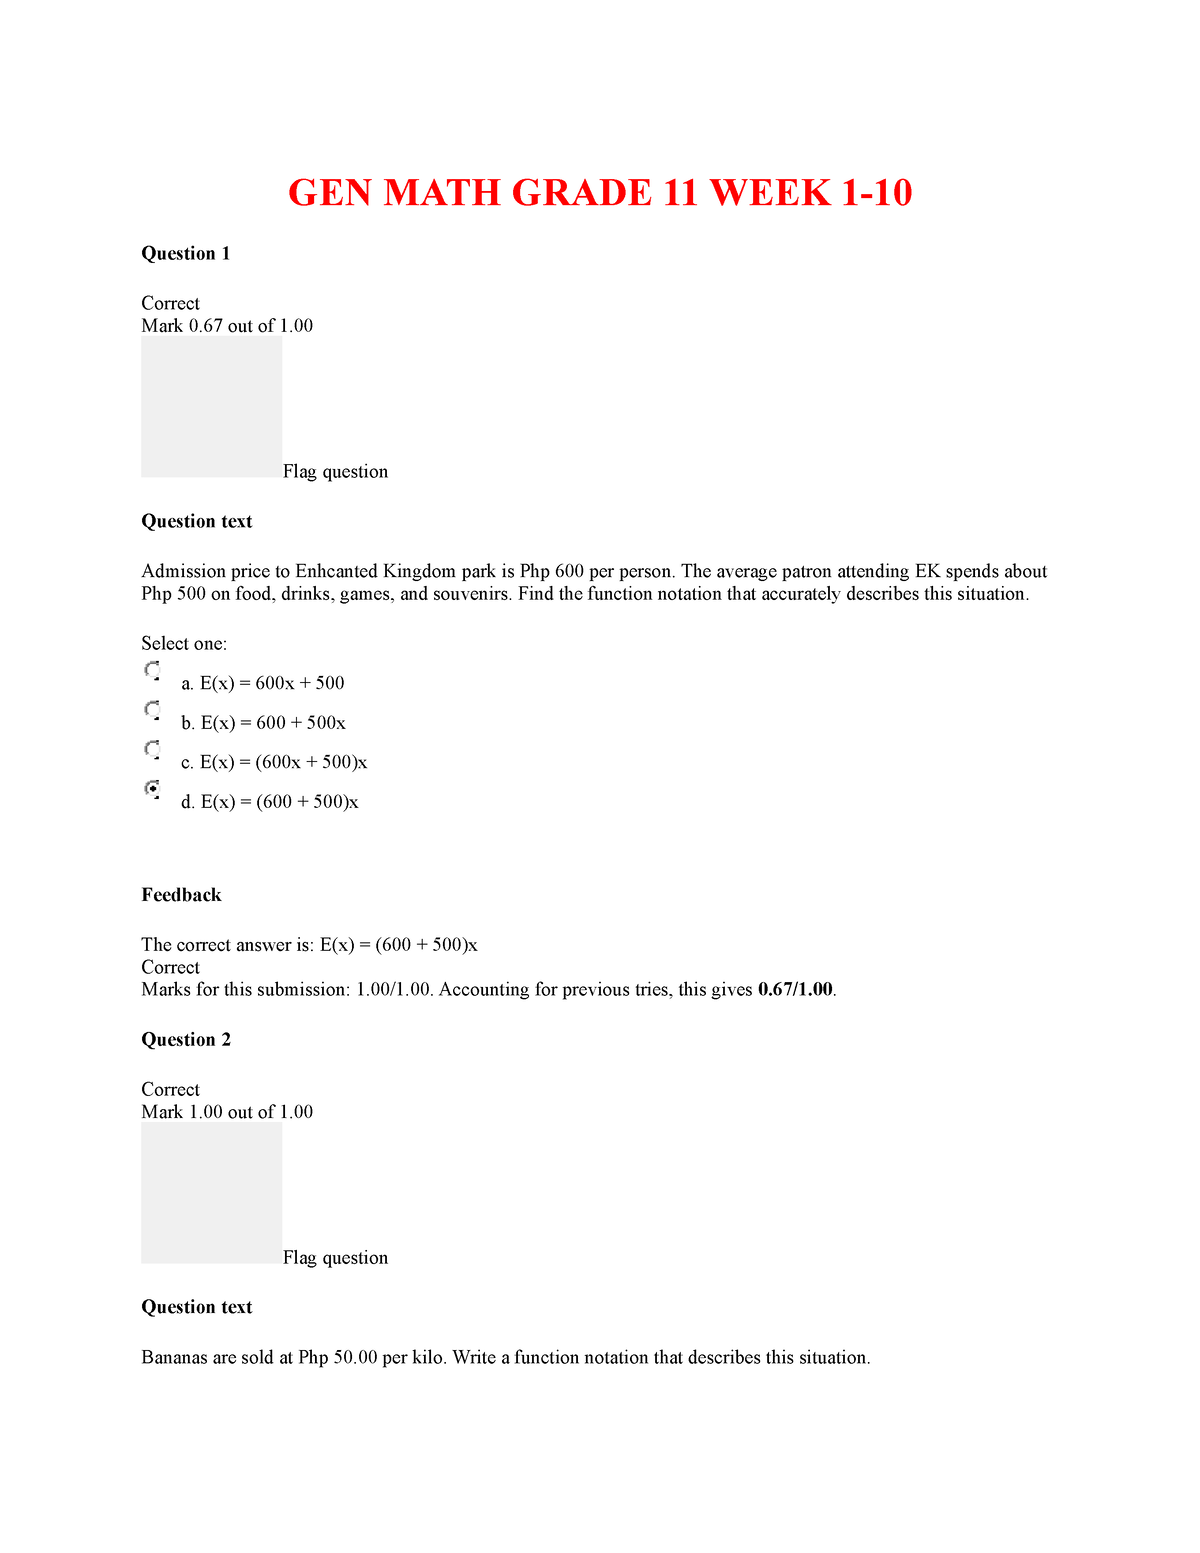 gen-math-week-1-10-asdsaas-gen-math-grade-11-week-1-question-1